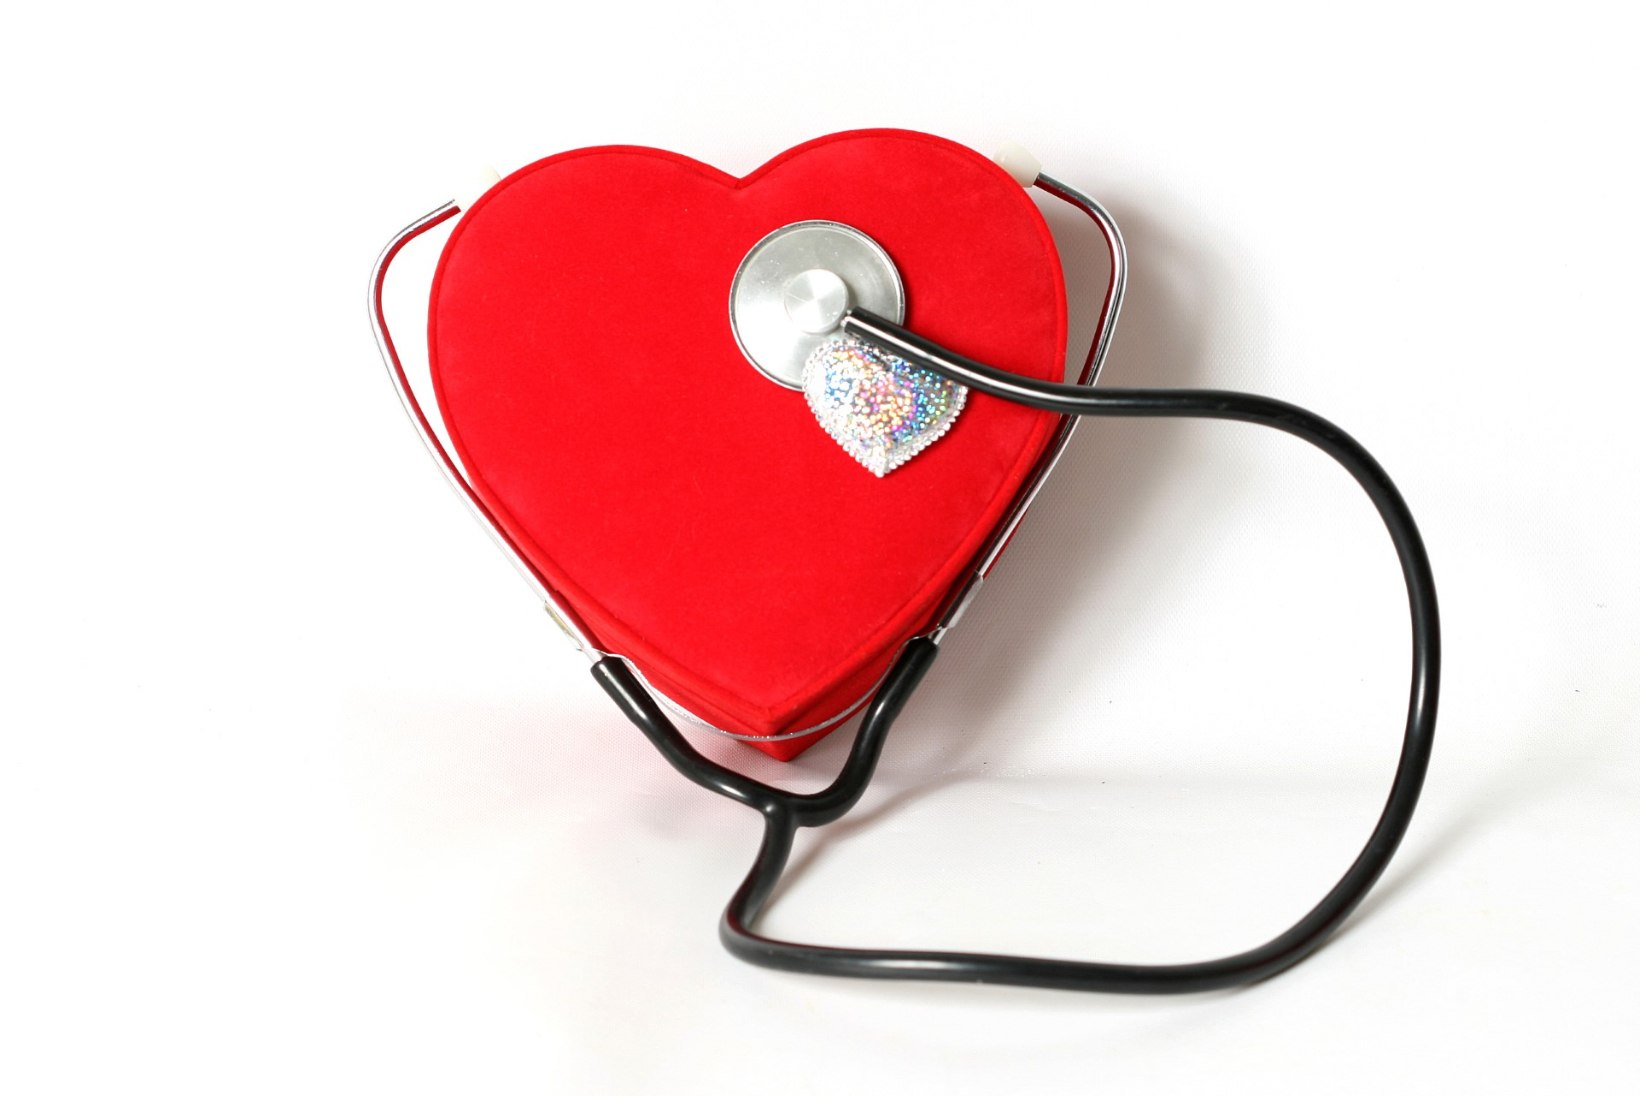 Sapikivitõbi suurendab riski südamehaiguste tekkeks